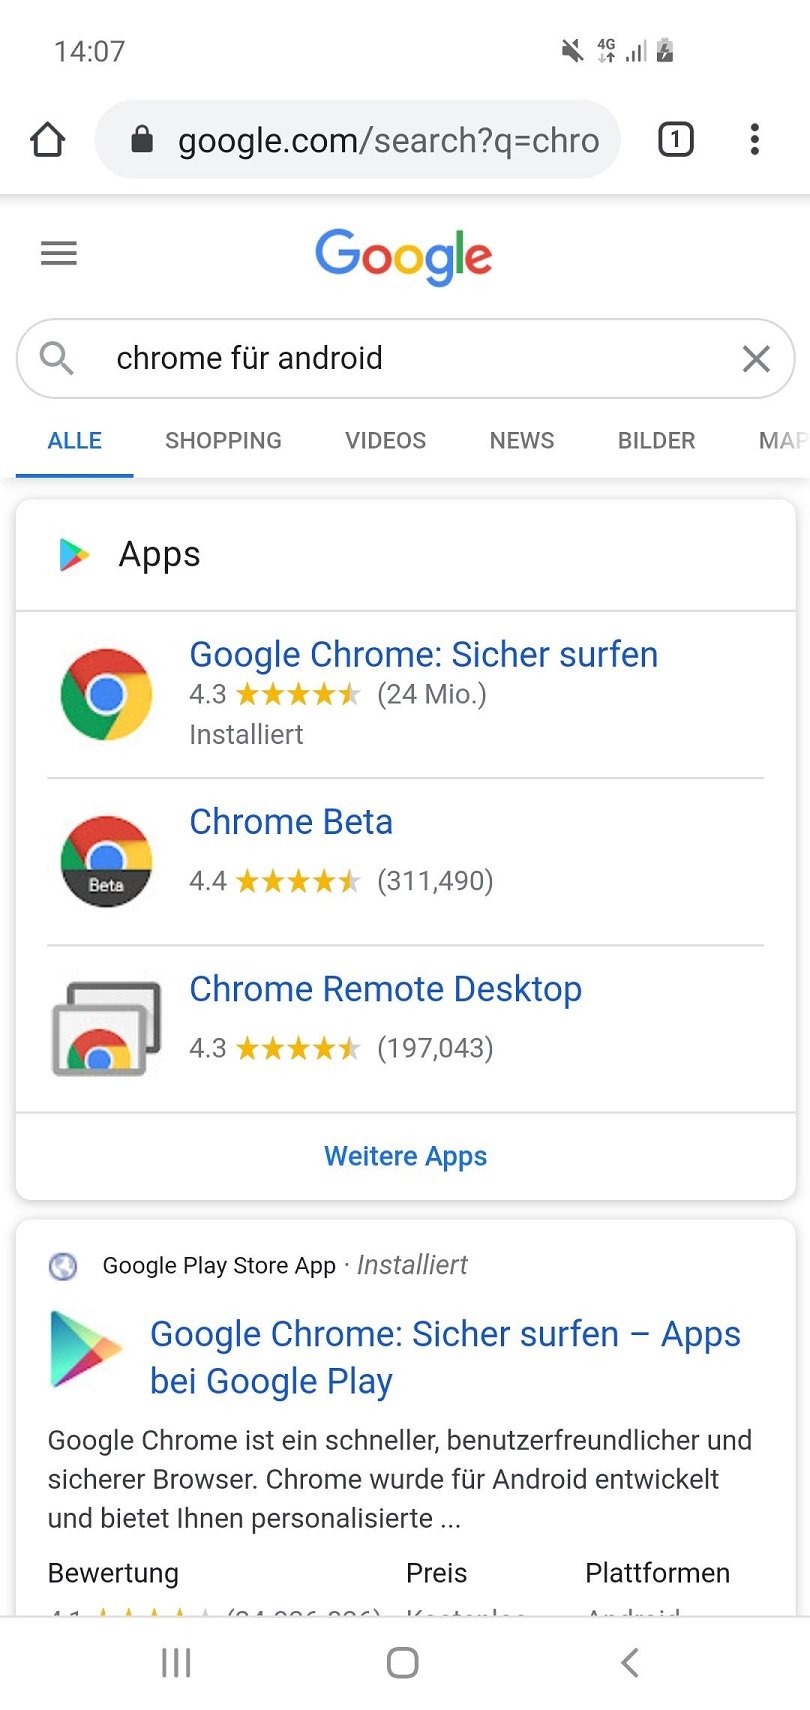 Google Chrome Browser für Android im Test